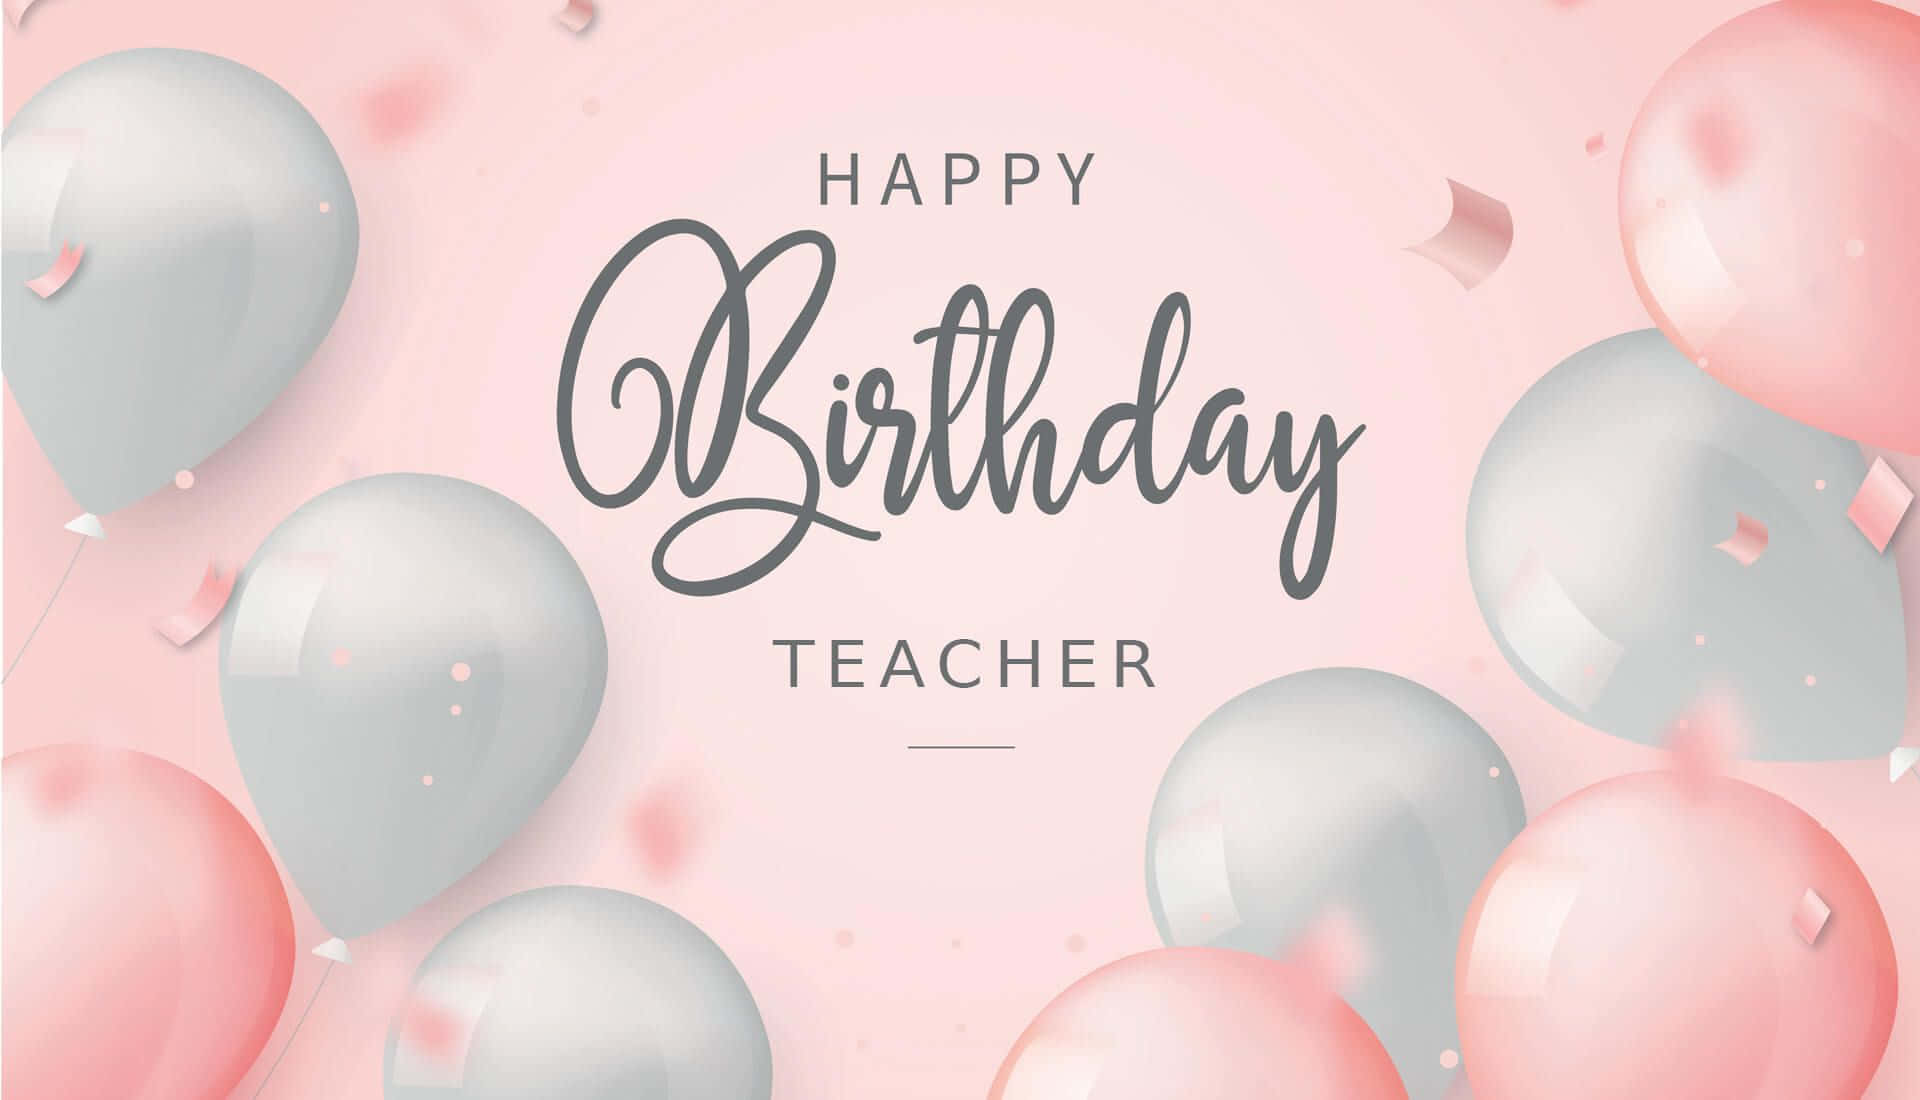 Allesgute Zum Geburtstag, Lehrer/in, Mit Luftballons Und Konfetti. Wallpaper